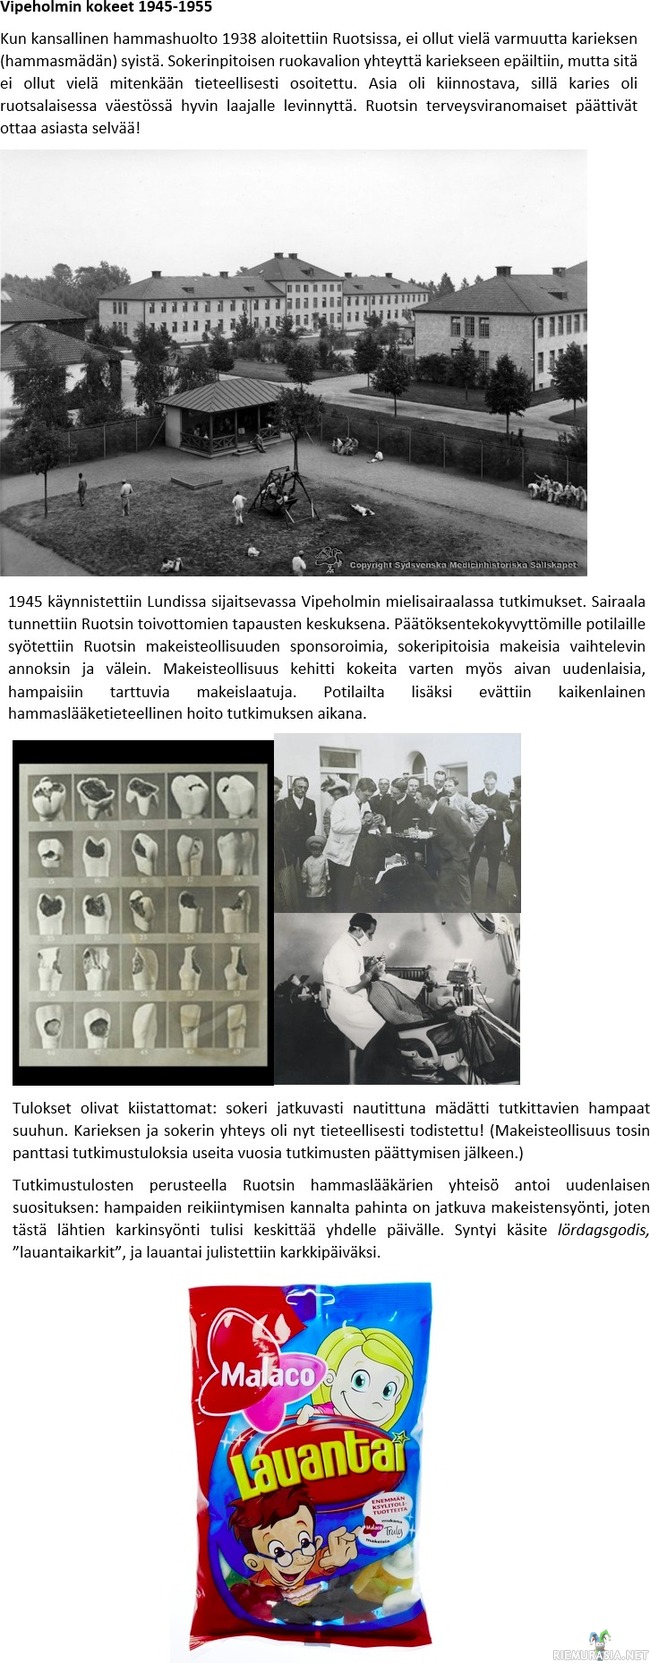 Vipeholmin kokeet - Vipeholmissa 1945-1955 suoritetut ihmiskokeet olivat pitkään yksi Ruotsalaisen kansankodin vaietuista salaisuuksista, kunnes ne 1990 päätyivät päivänvaloon.